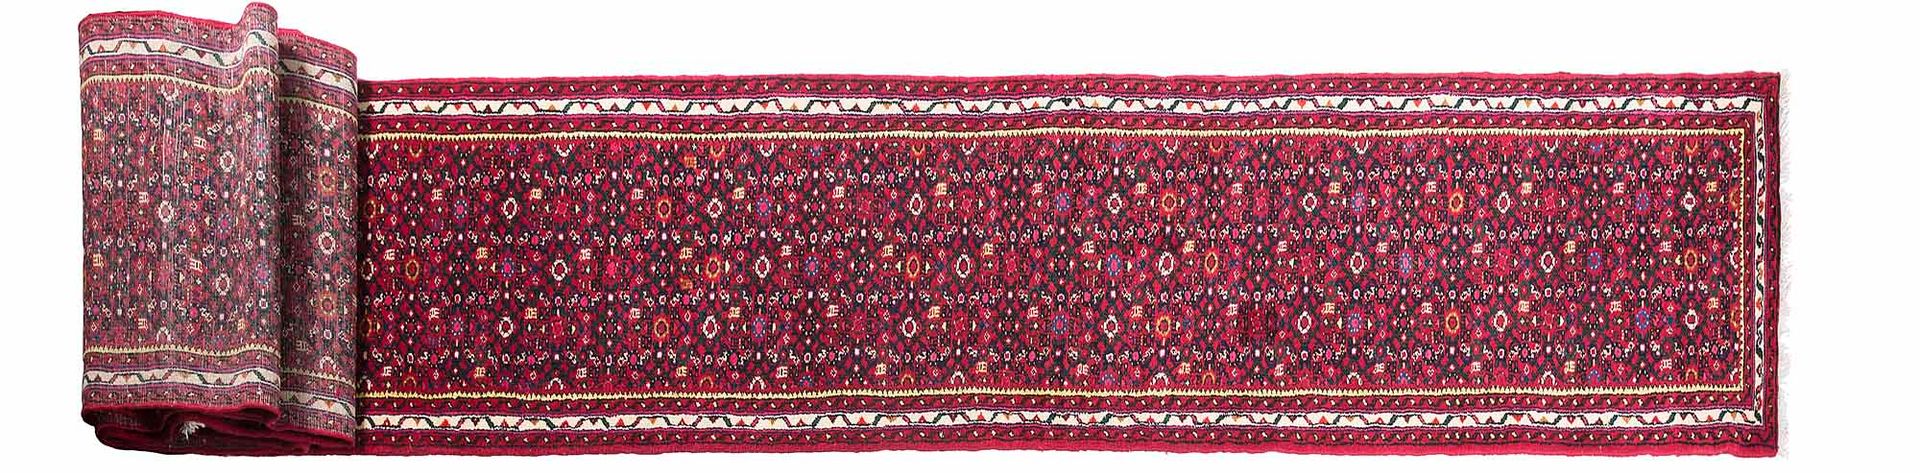 Null 非常长和重要的胡塞纳巴德（伊朗）画廊地毯，20世纪中期

尺寸：1085 x 72厘米。

技术特点 : 羊毛天鹅绒，棉质底板。

午夜蓝色的场地上装&hellip;